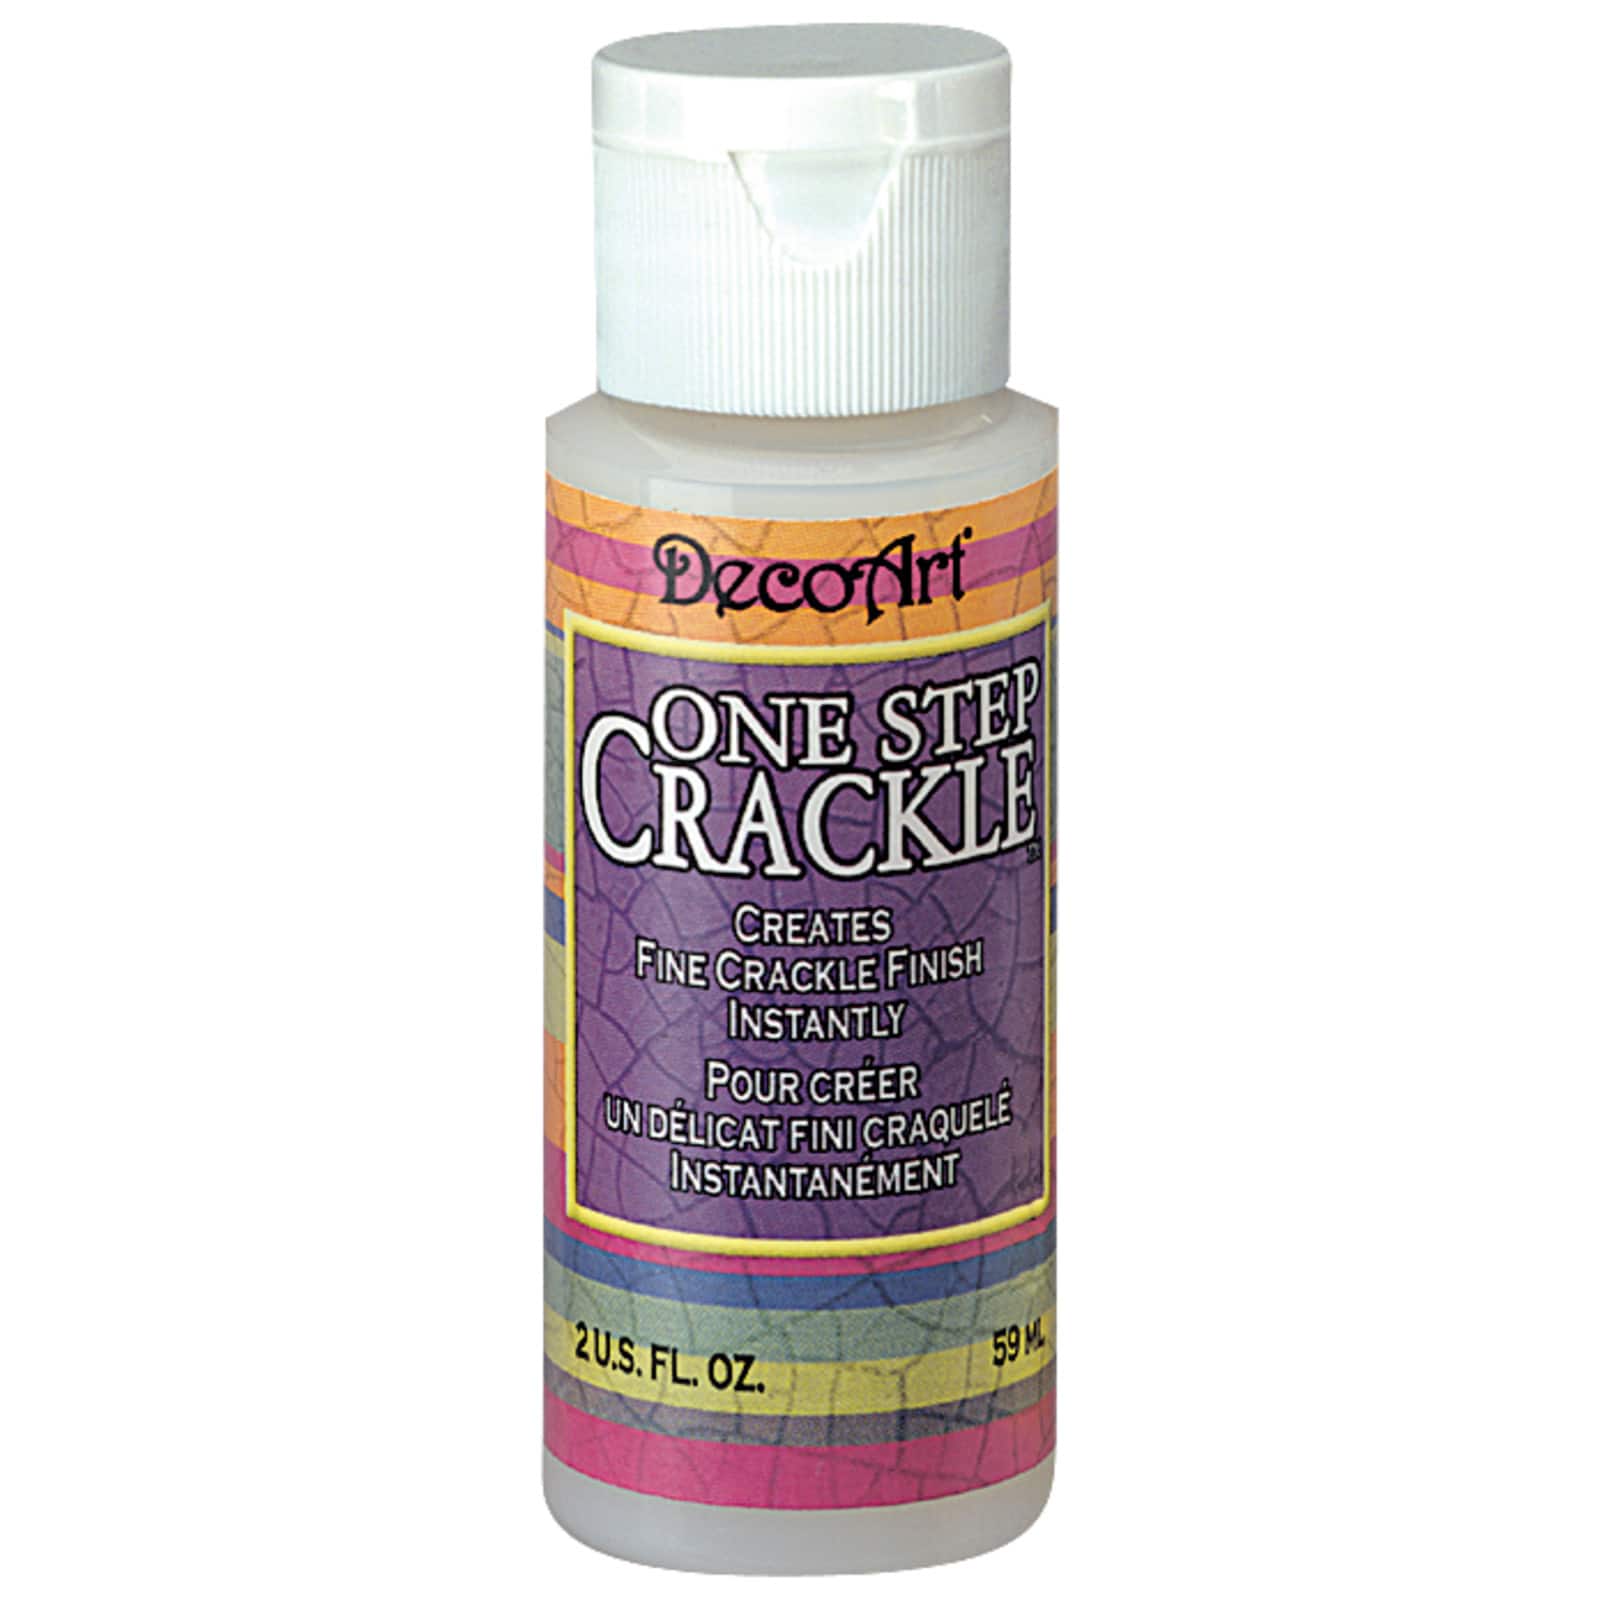 Crackle medium, 50 ml